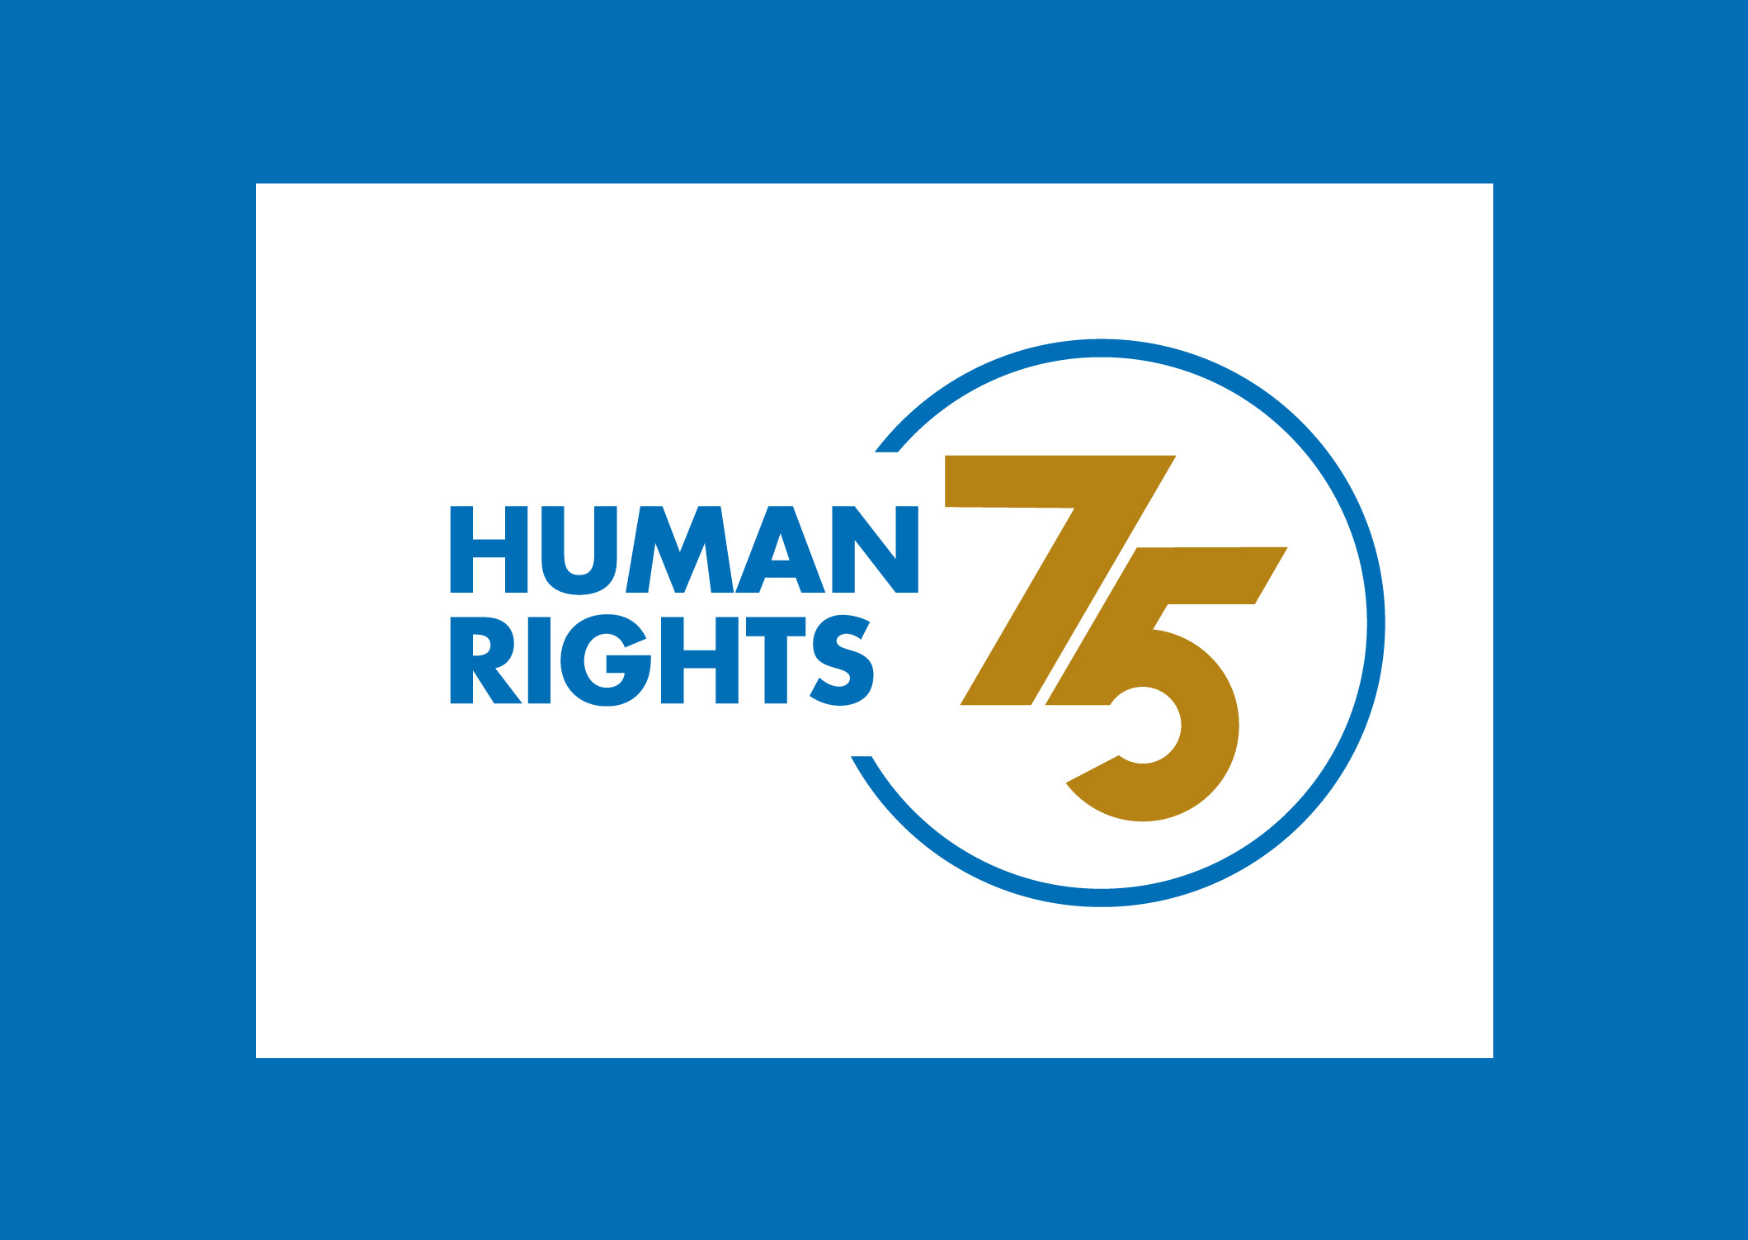 ადამიანის უფლებათა საყოველთაო დეკლარაციას 75 წელი უსრულდება